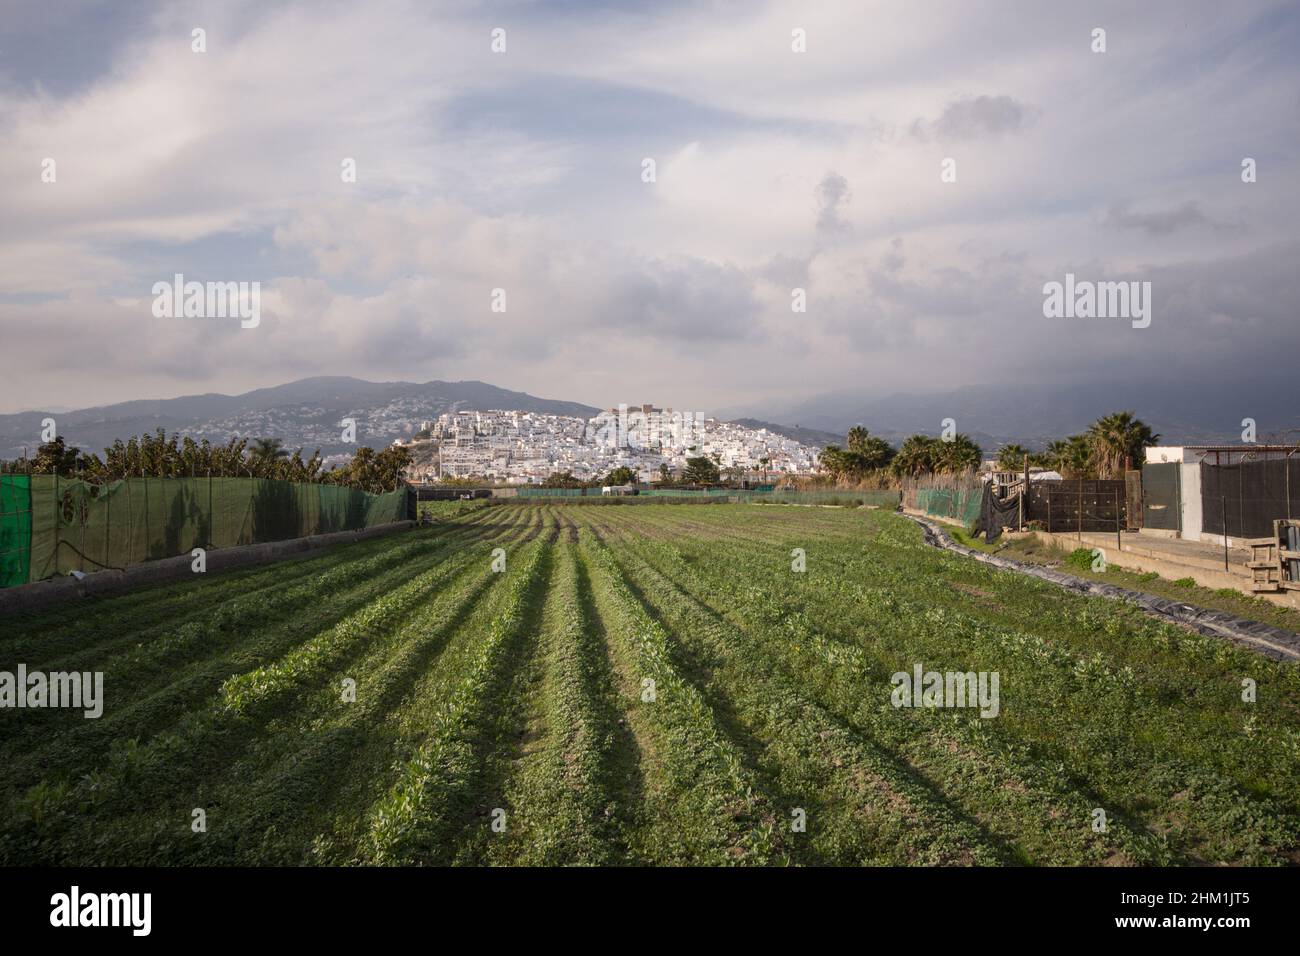 La ciudad española Salobreña rodeada de tierras de labranza en una colina, Costa tropical, Granda, España. Foto de stock